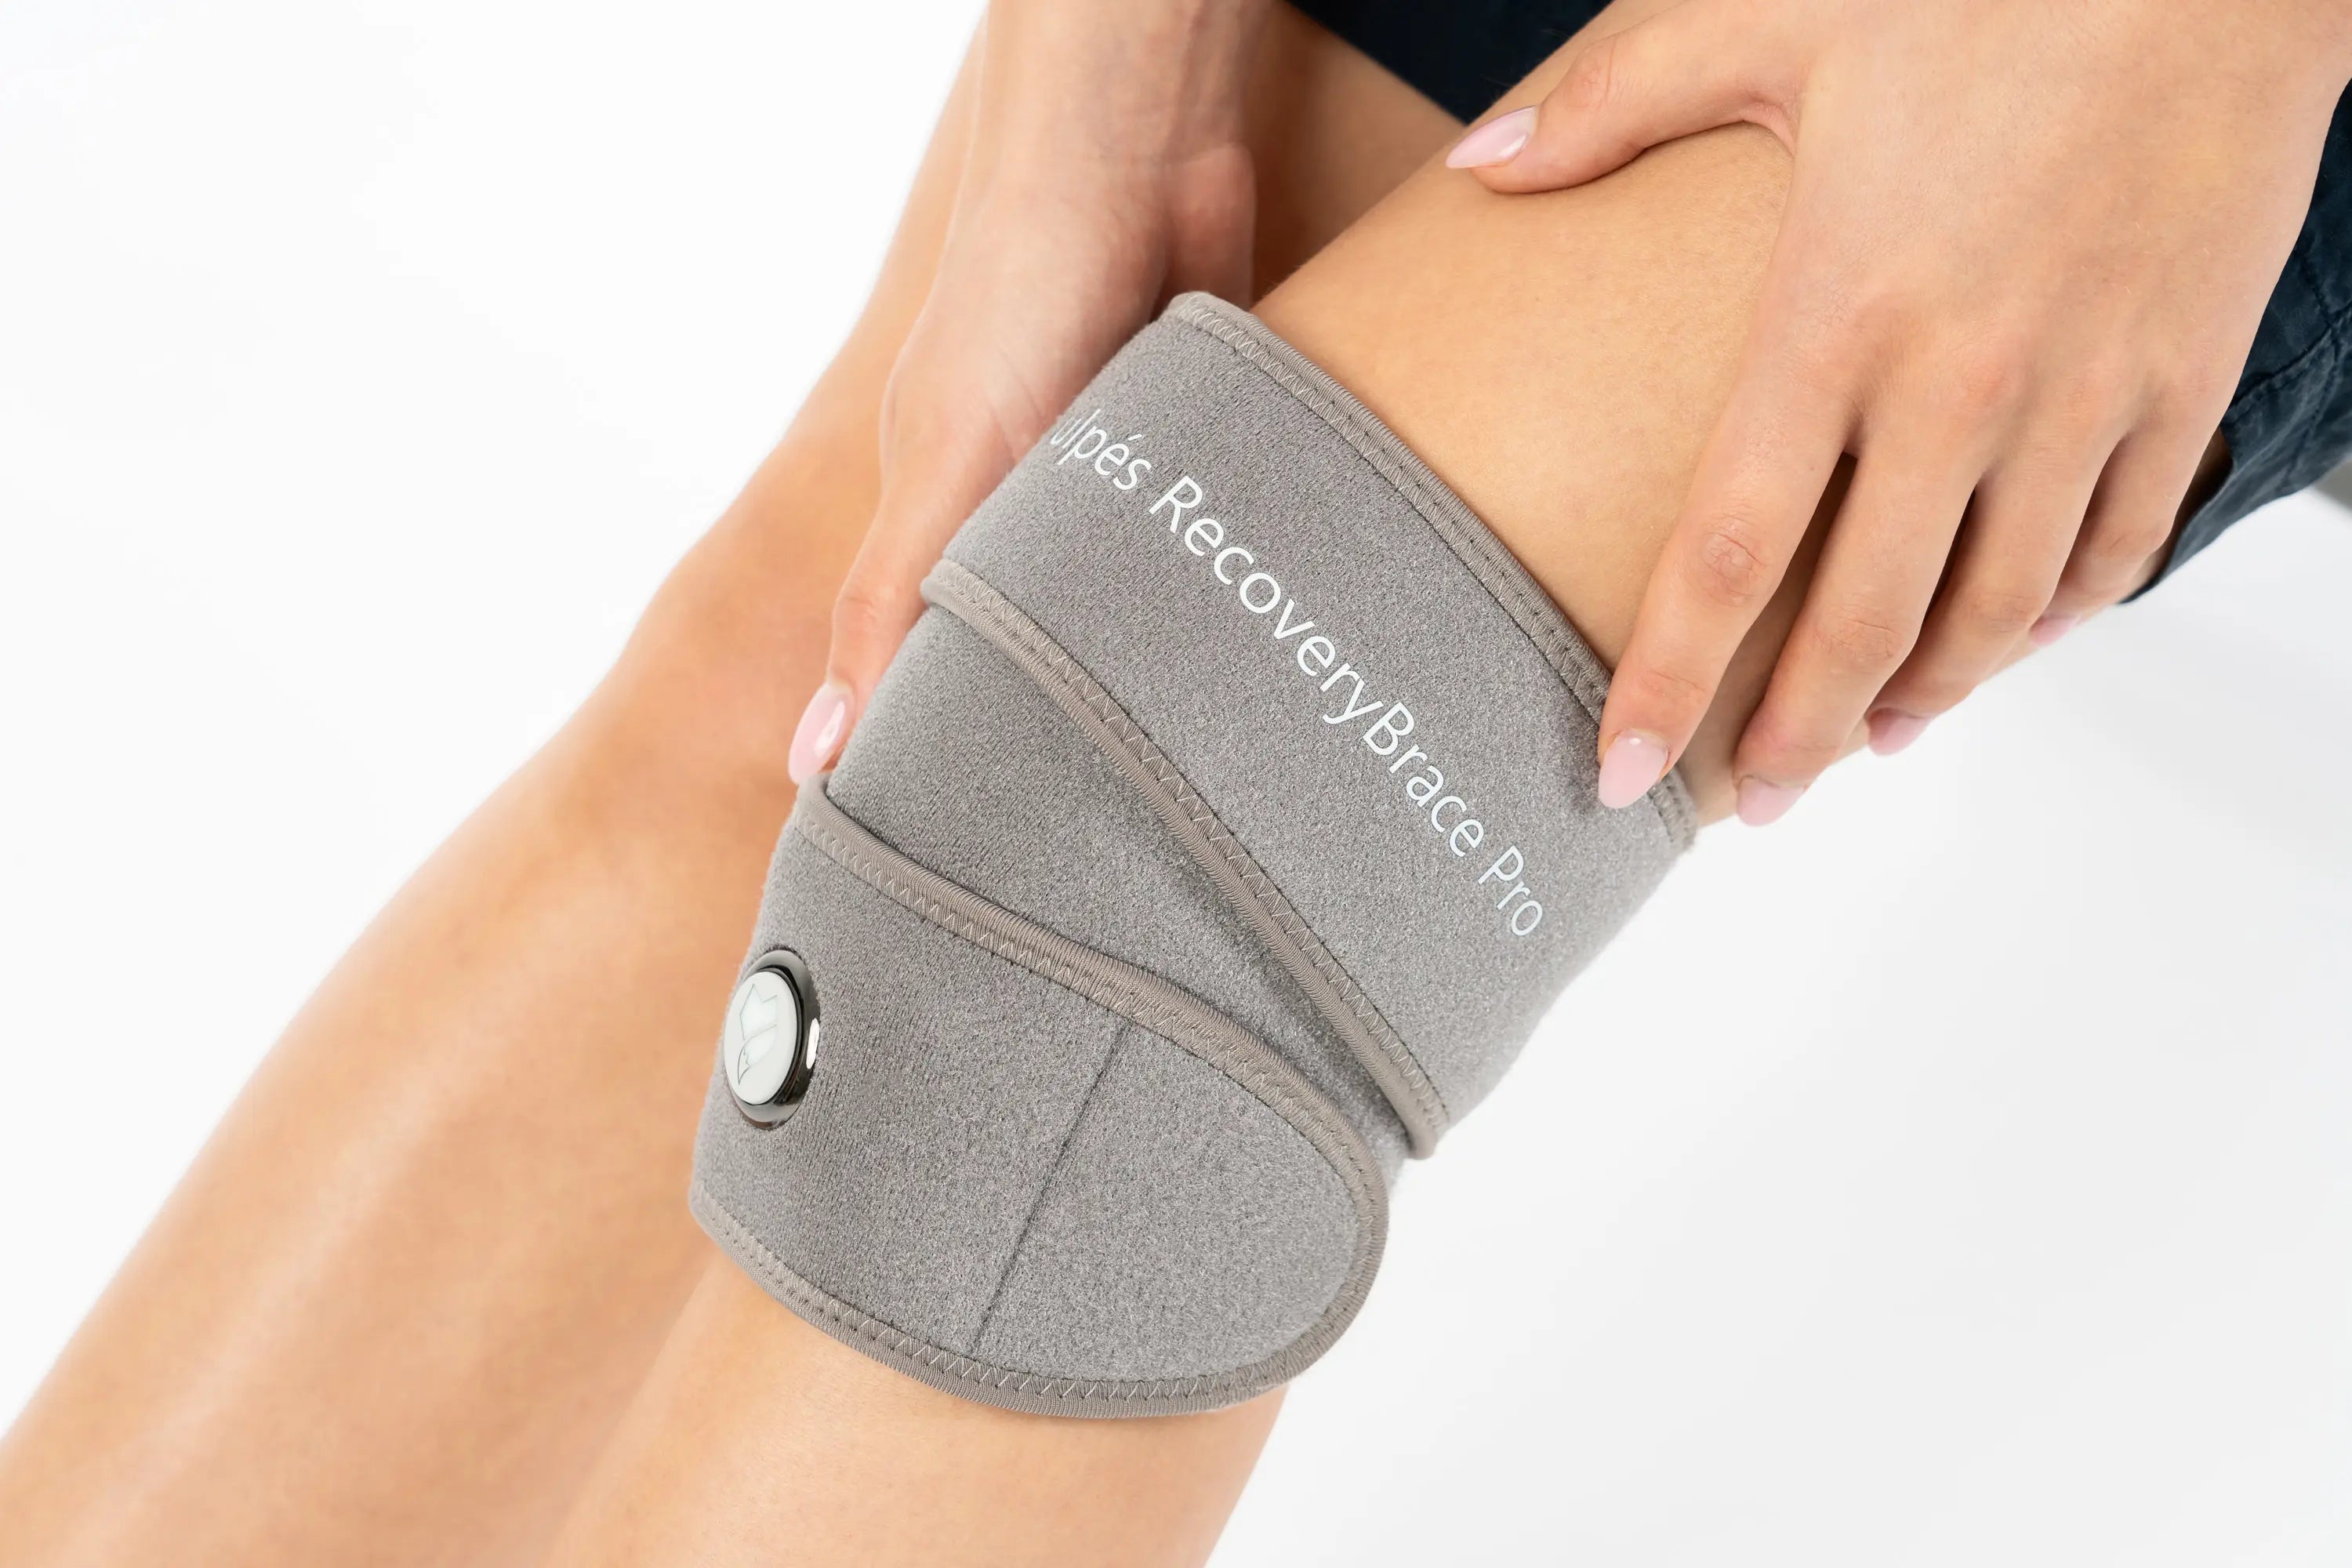 Vulpés RecoveryBrace Pro - Knee support | Knee bandage brace